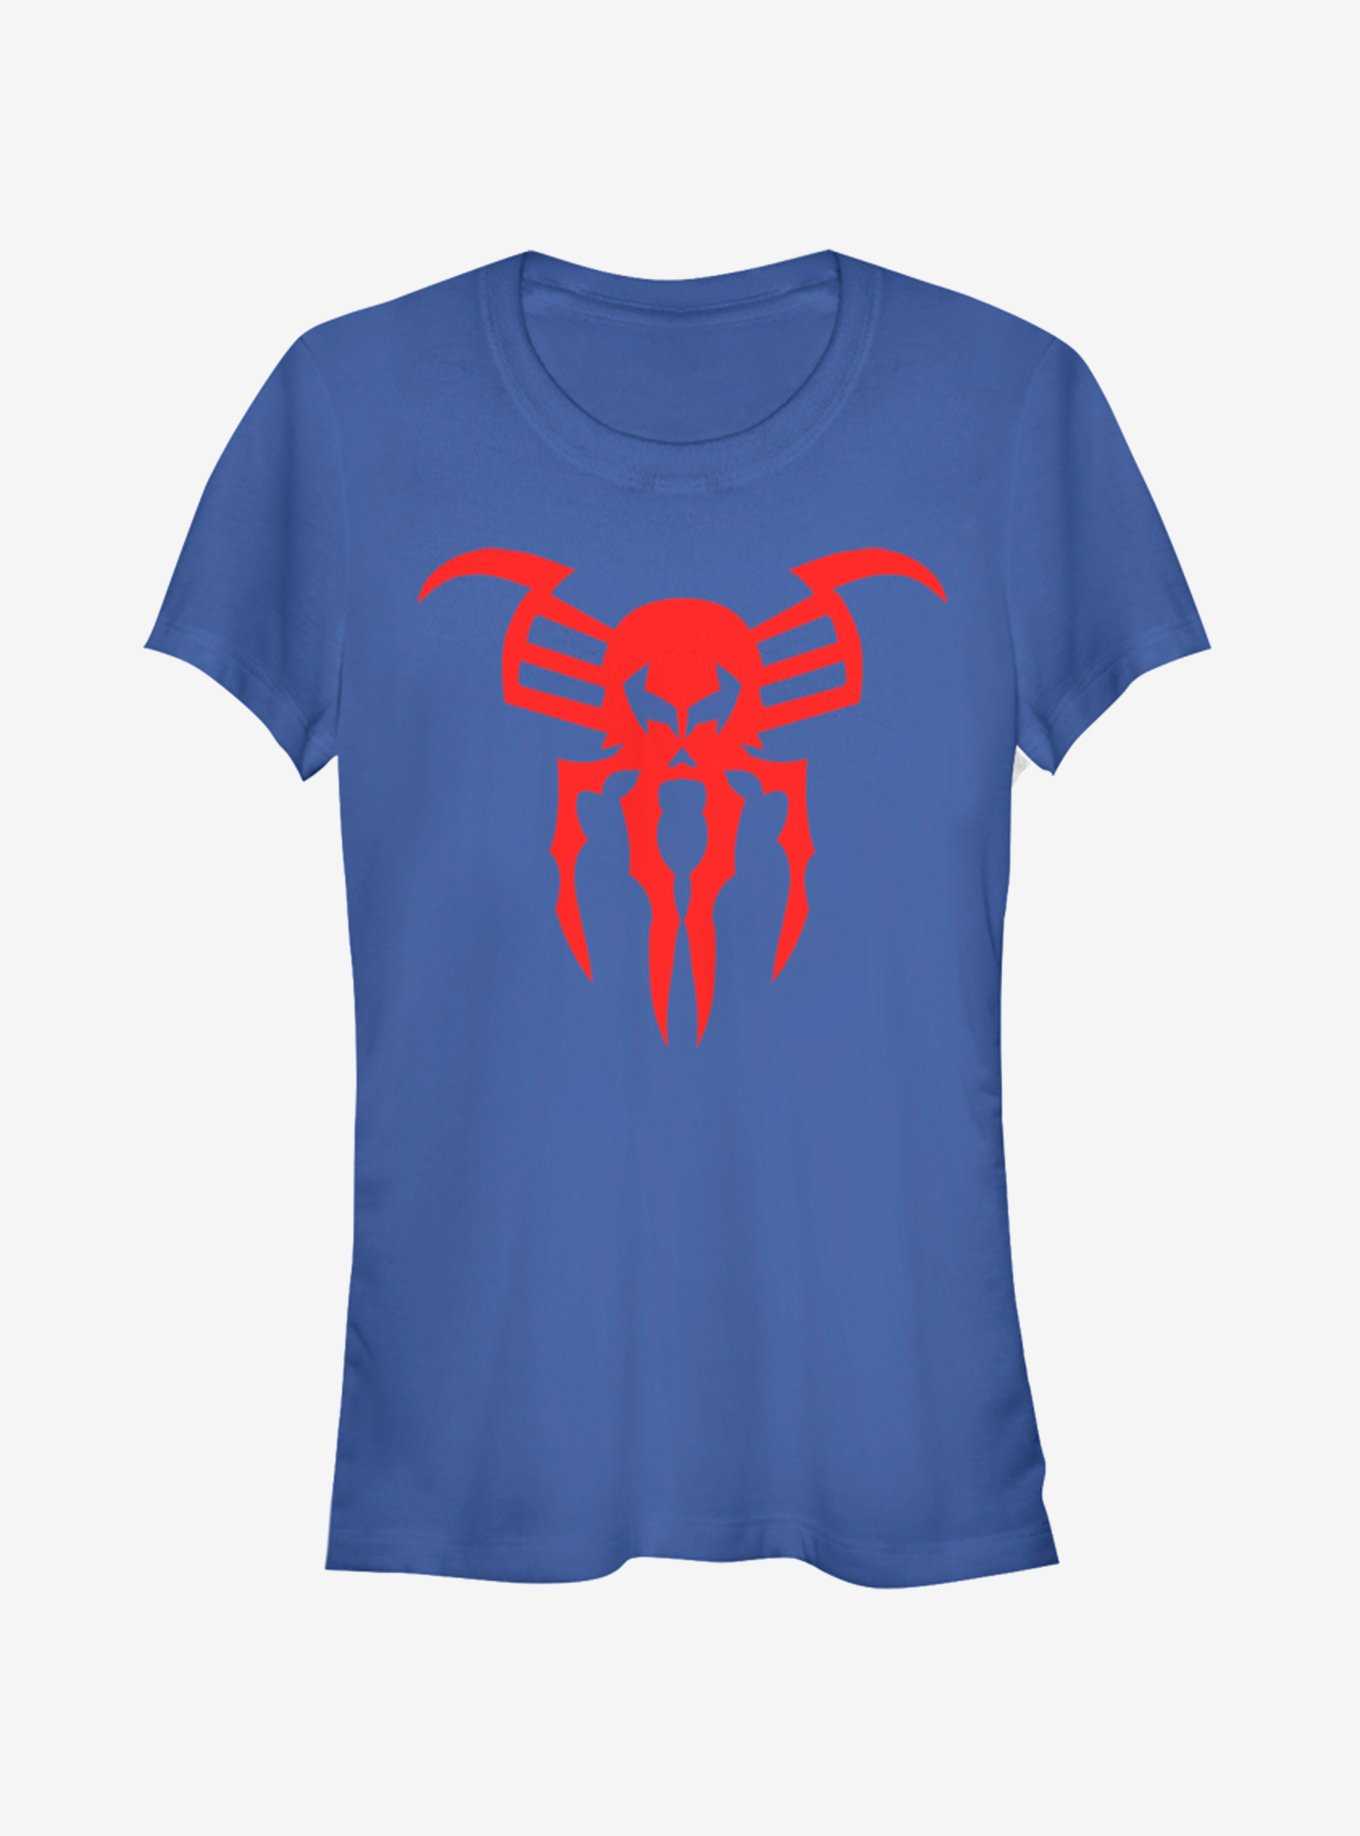 Marvel Spider-Man Spider-Man 2099 Icon Girls T-Shirt, , hi-res